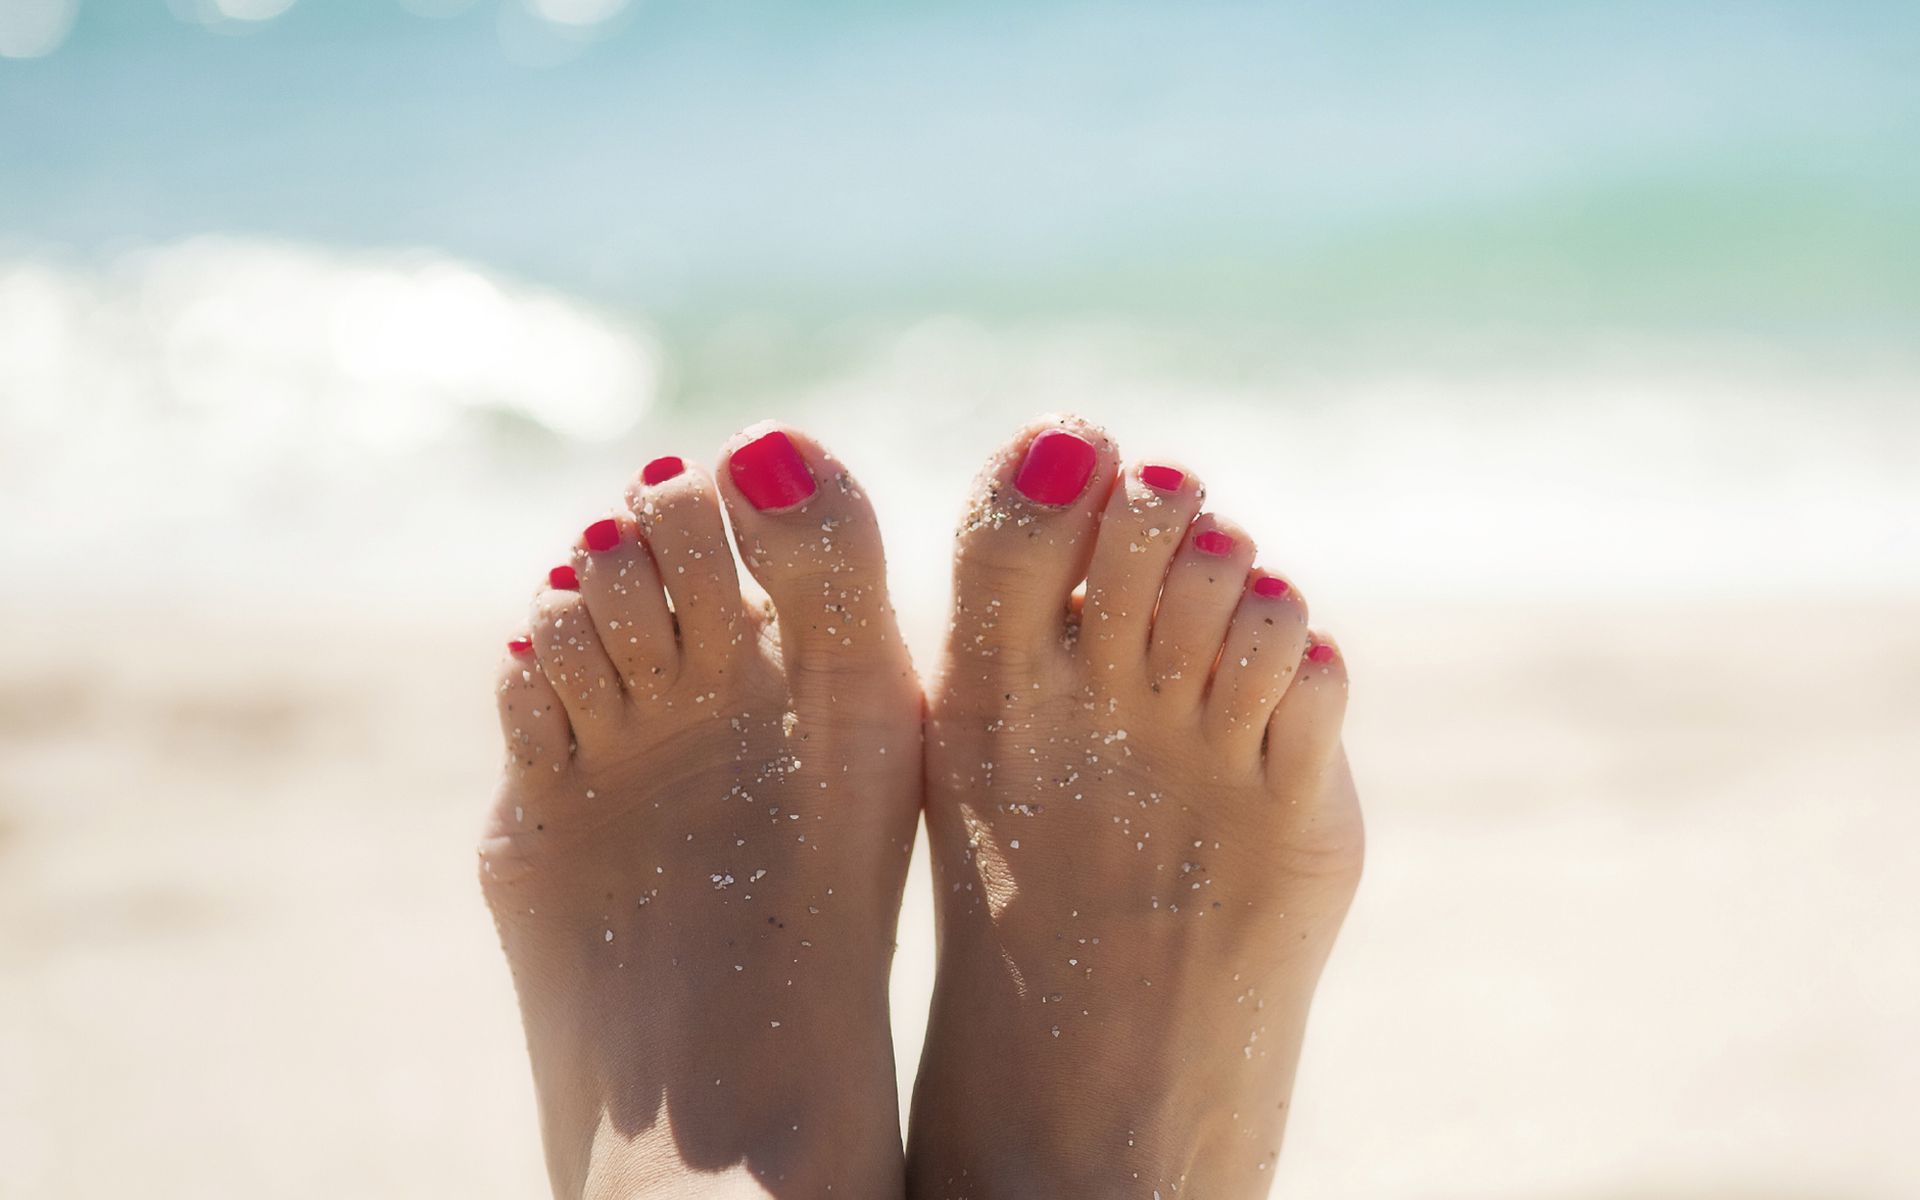 Пятки моделей. Красивые женские ноги. Красивые стопы. Стопы девушек на пляже. Красивые ступни.